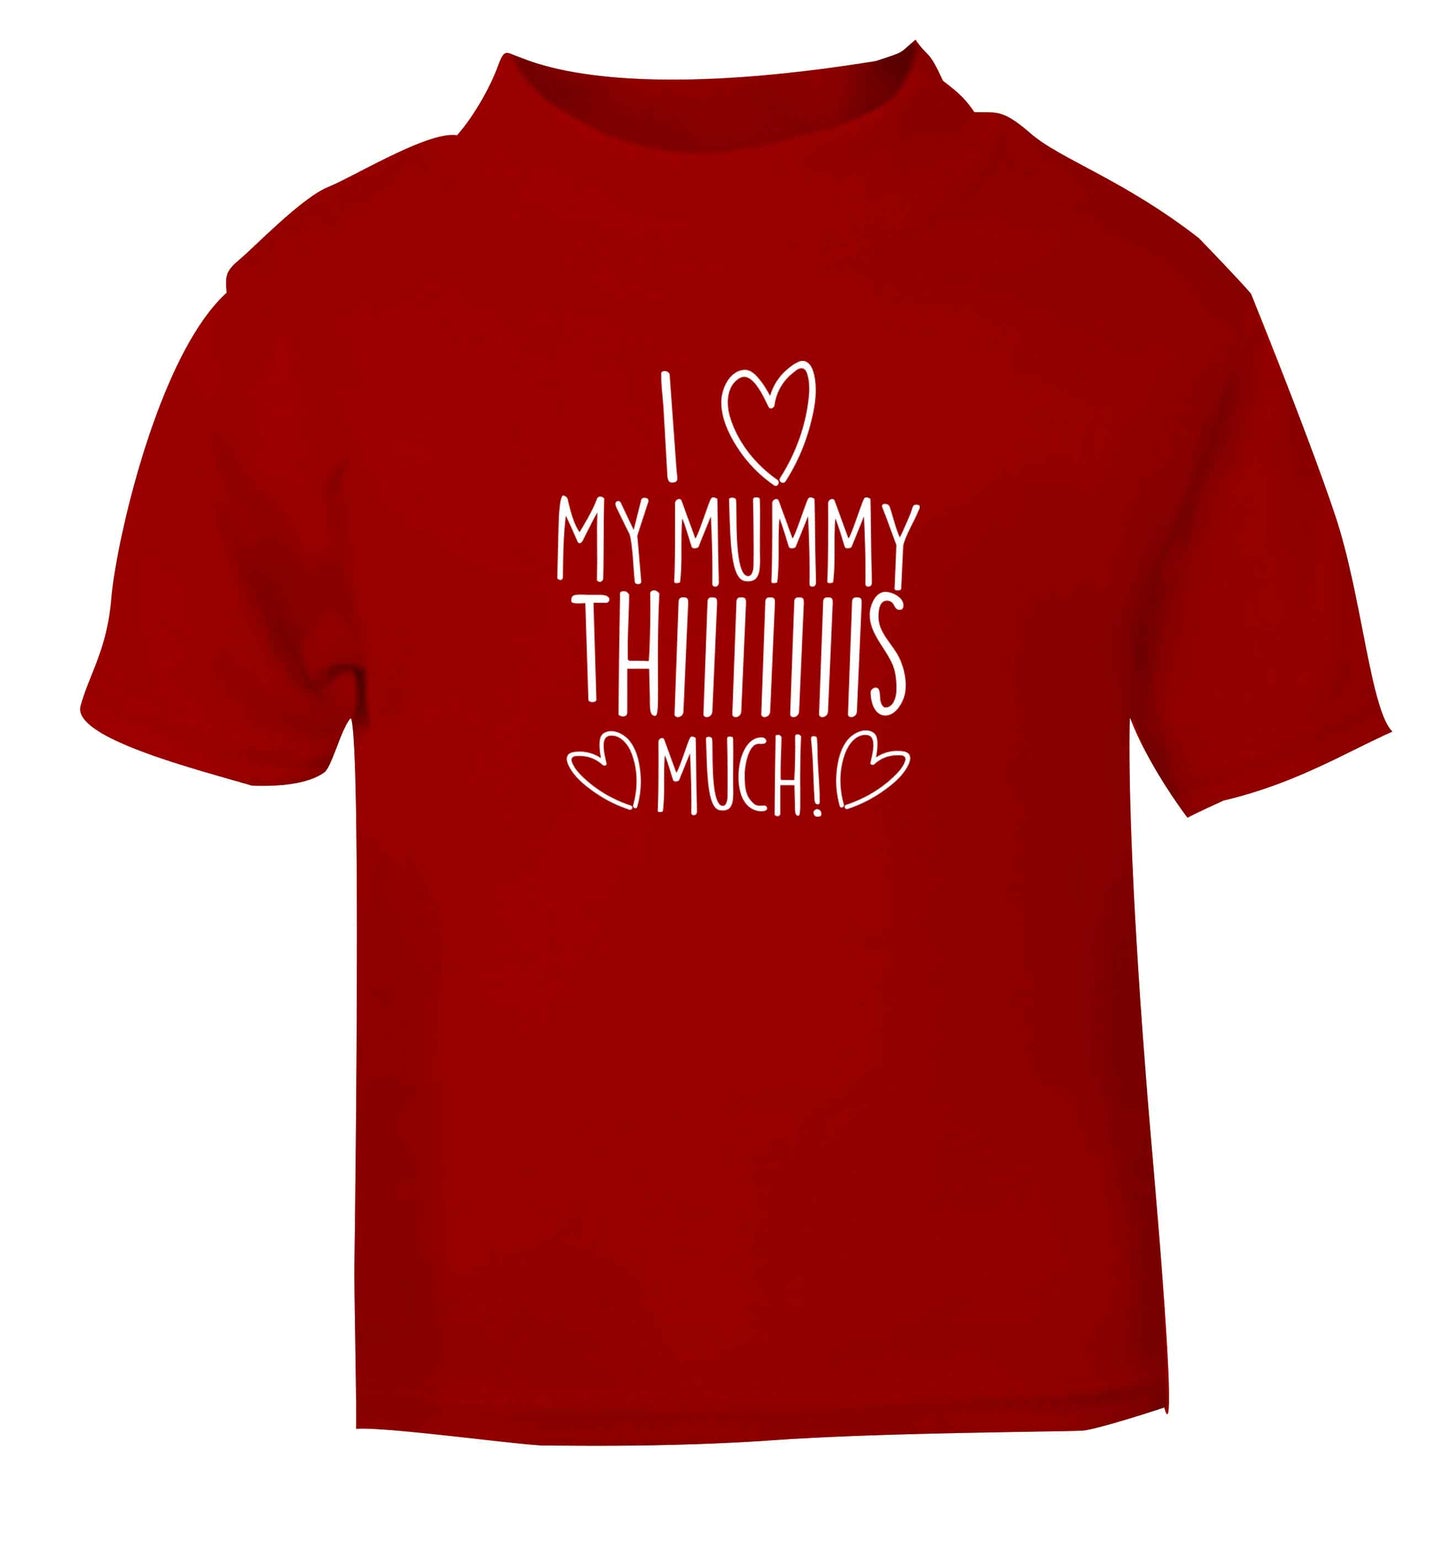 I love my mummy thiiiiis much! red baby toddler Tshirt 2 Years